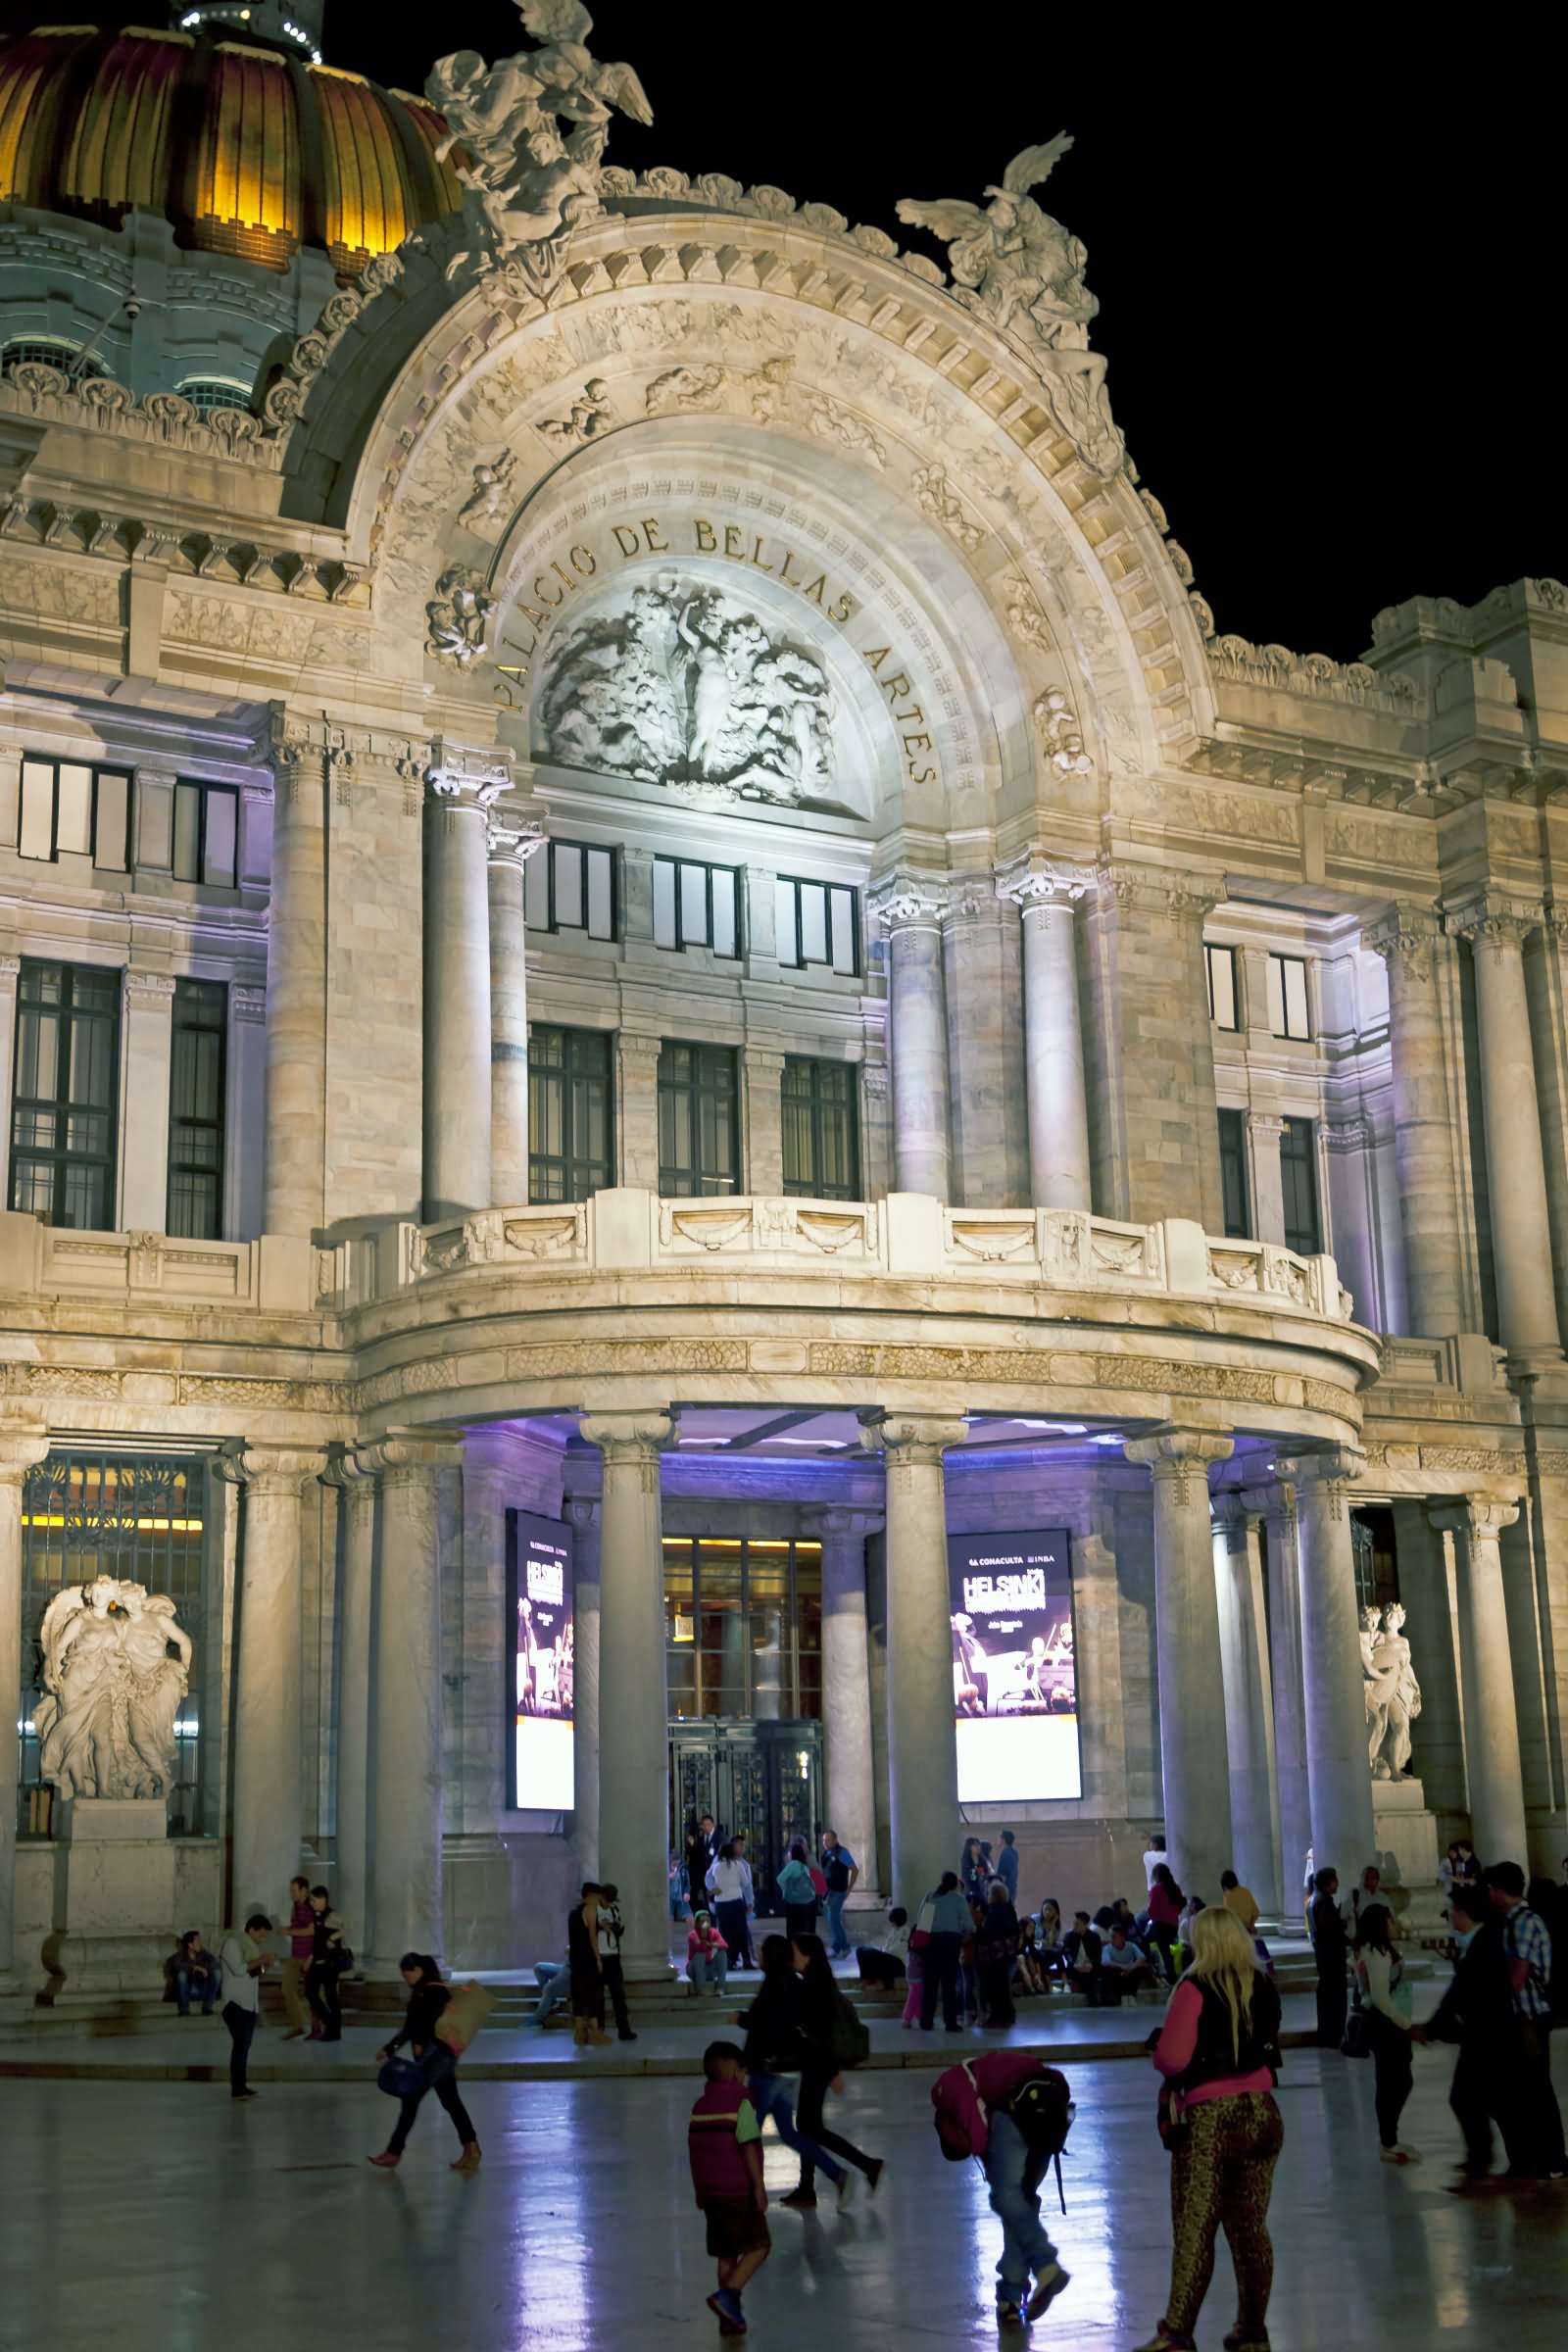 Side View Of Palacio de Bellas Artes At Night